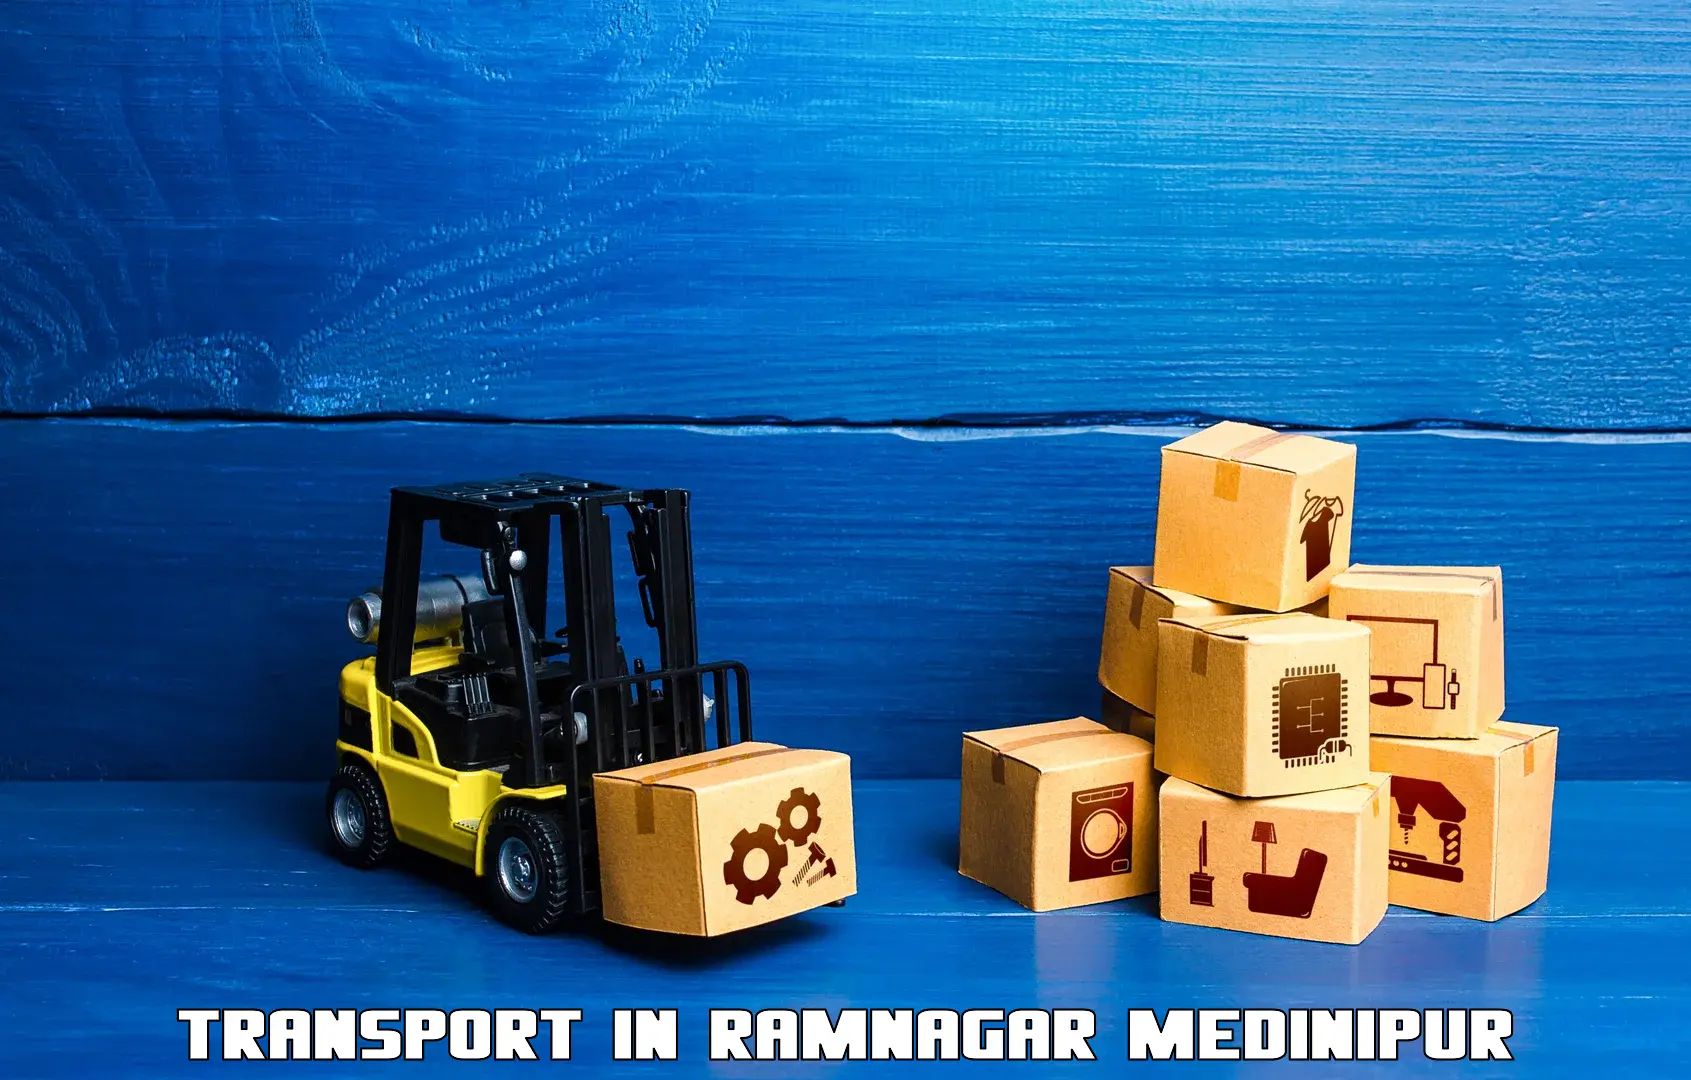 Road transport online services in Ramnagar Medinipur